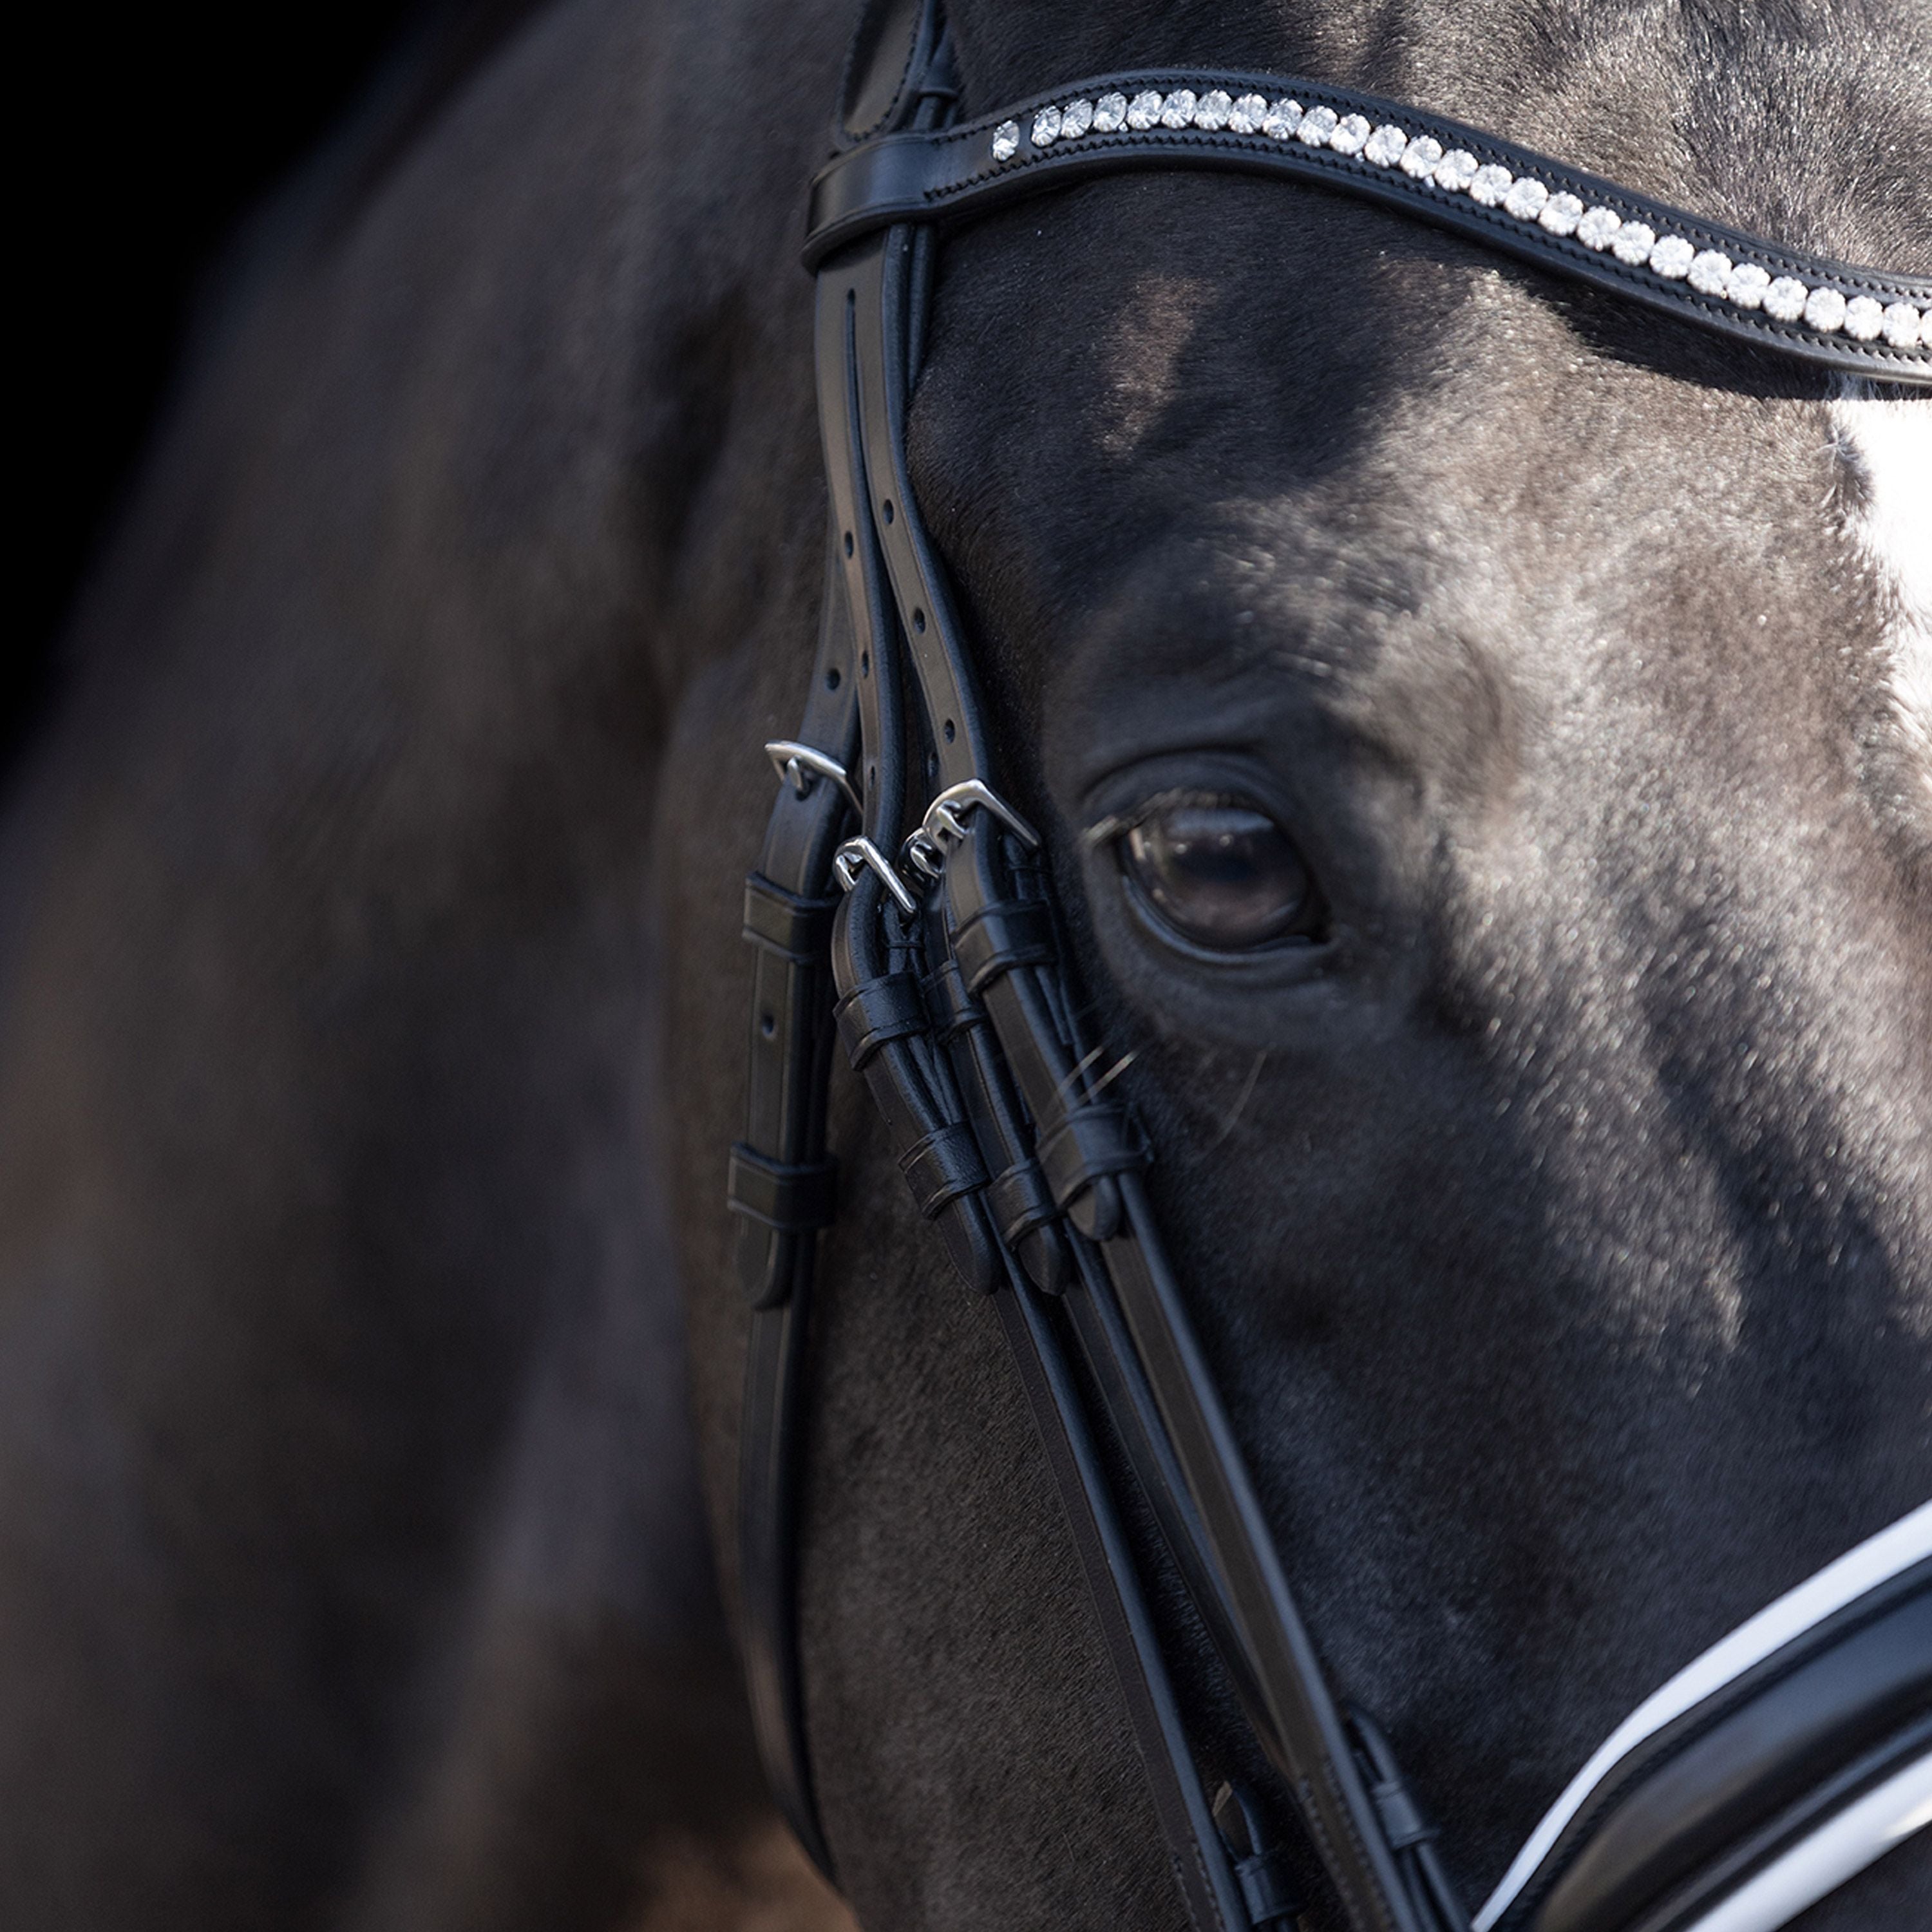 HV POLO »Pferde Kandarenzaum Legacy de Luxe